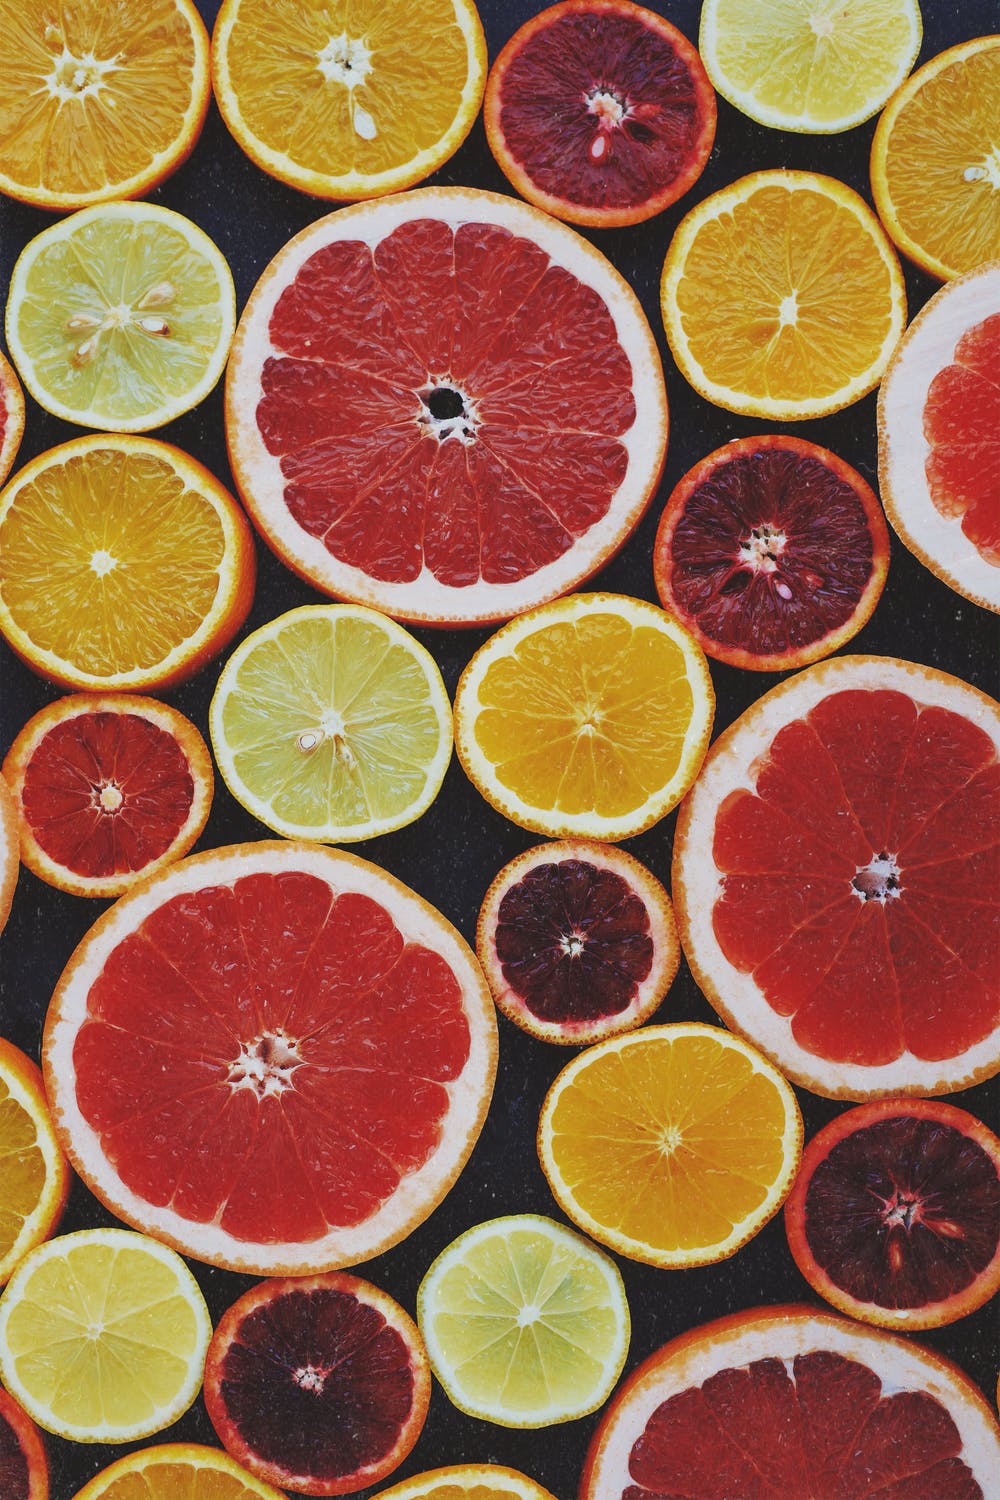 多種顏色的柑橘類水果。